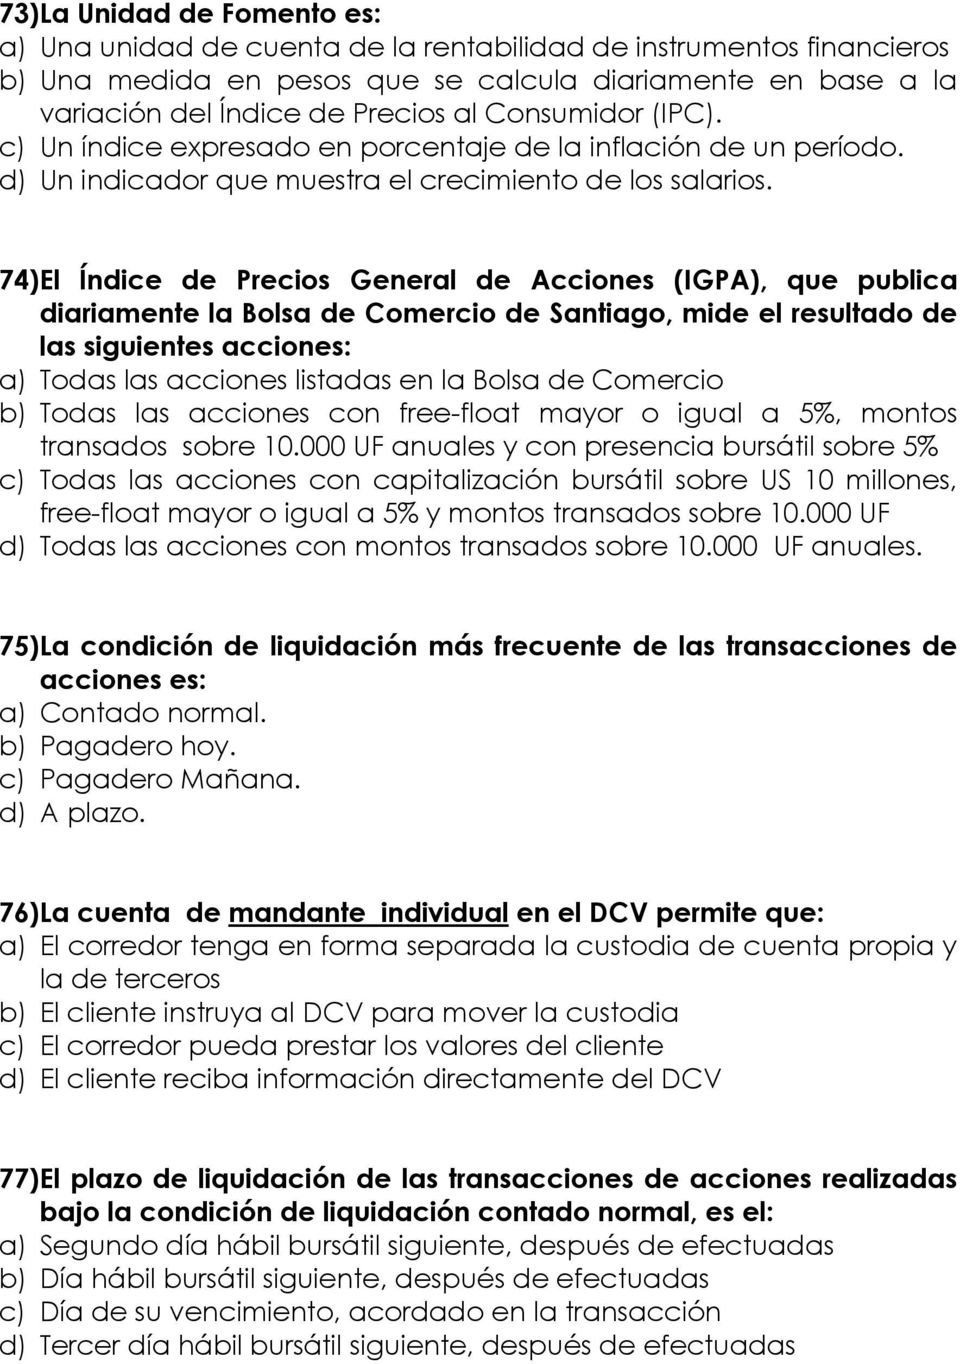 74)El Índice de Precios General de Acciones (IGPA), que publica diariamente la Bolsa de Comercio de Santiago, mide el resultado de las siguientes acciones: a) Todas las acciones listadas en la Bolsa